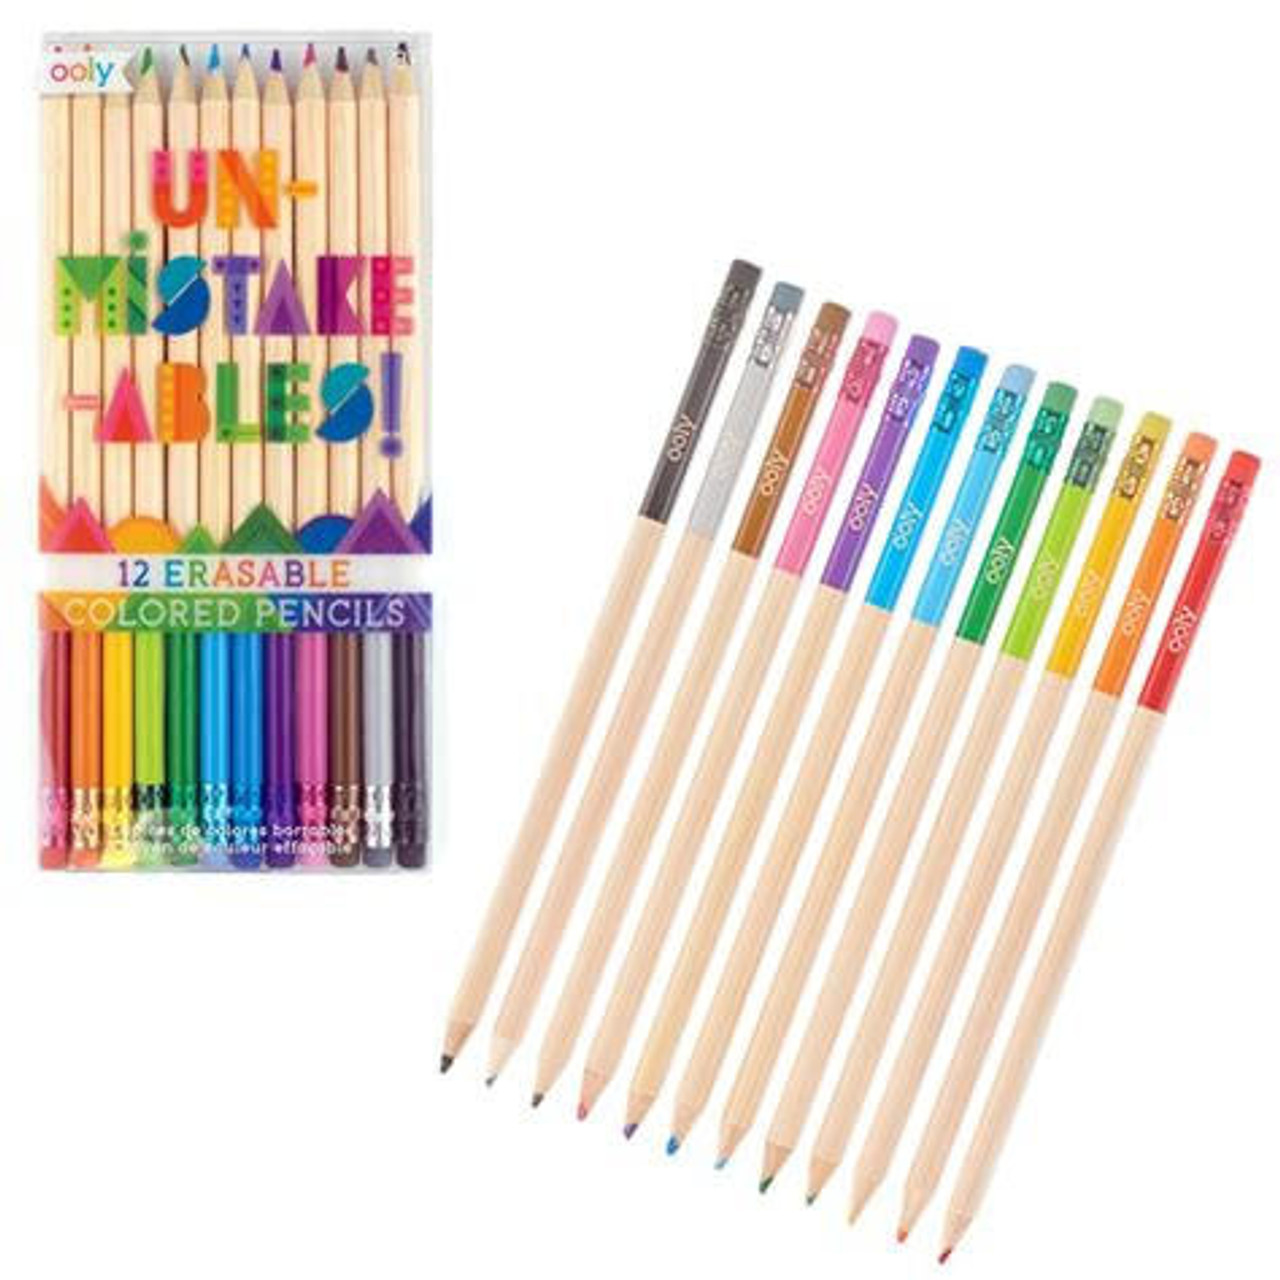 Blue Prismacolor Col-erase Erasable Colored Pencils, 12 Count Book